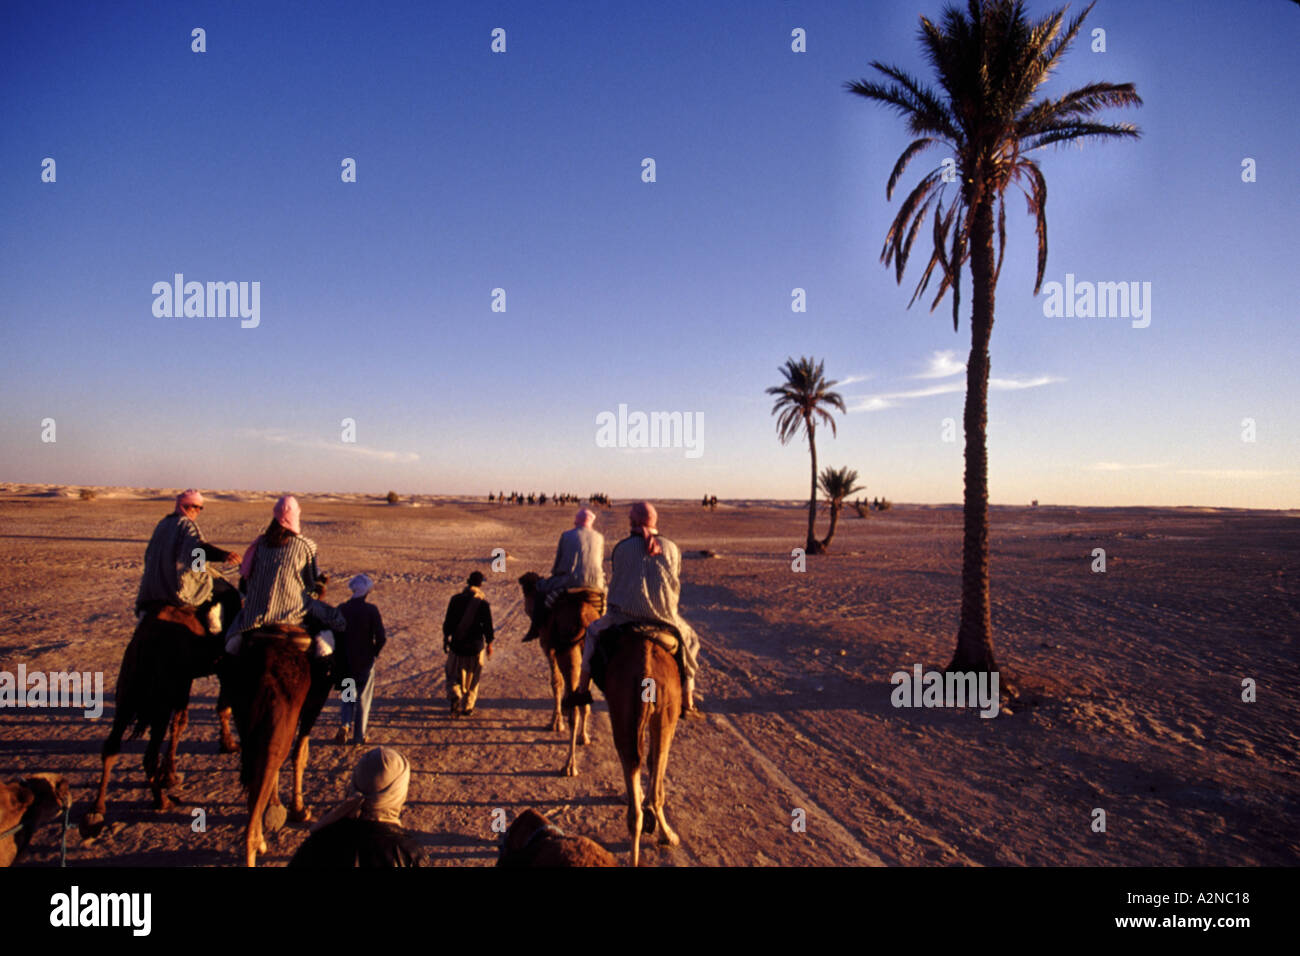 KARAWANSEREI 01 Hauptverkehrszeit in der Sahara Wüste Tunesien Afrika THIS IS 1 OF 2 ähnliche Bilder und 1 von 200 Gesamt Bilder Stockfoto